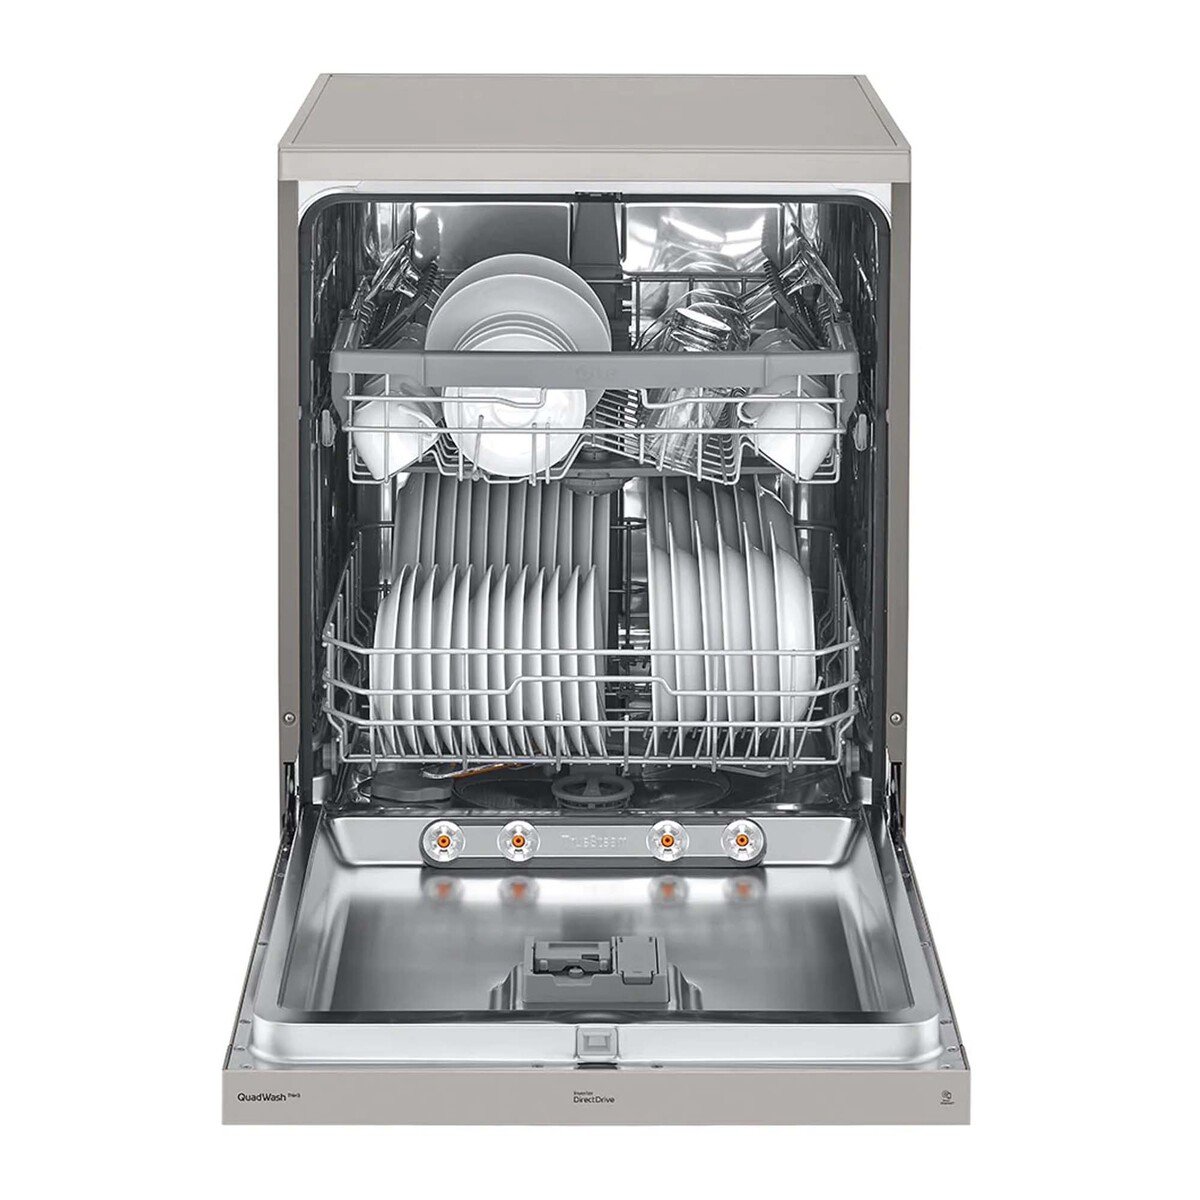 LG Quad Wash Dishwasher, DFC612FV